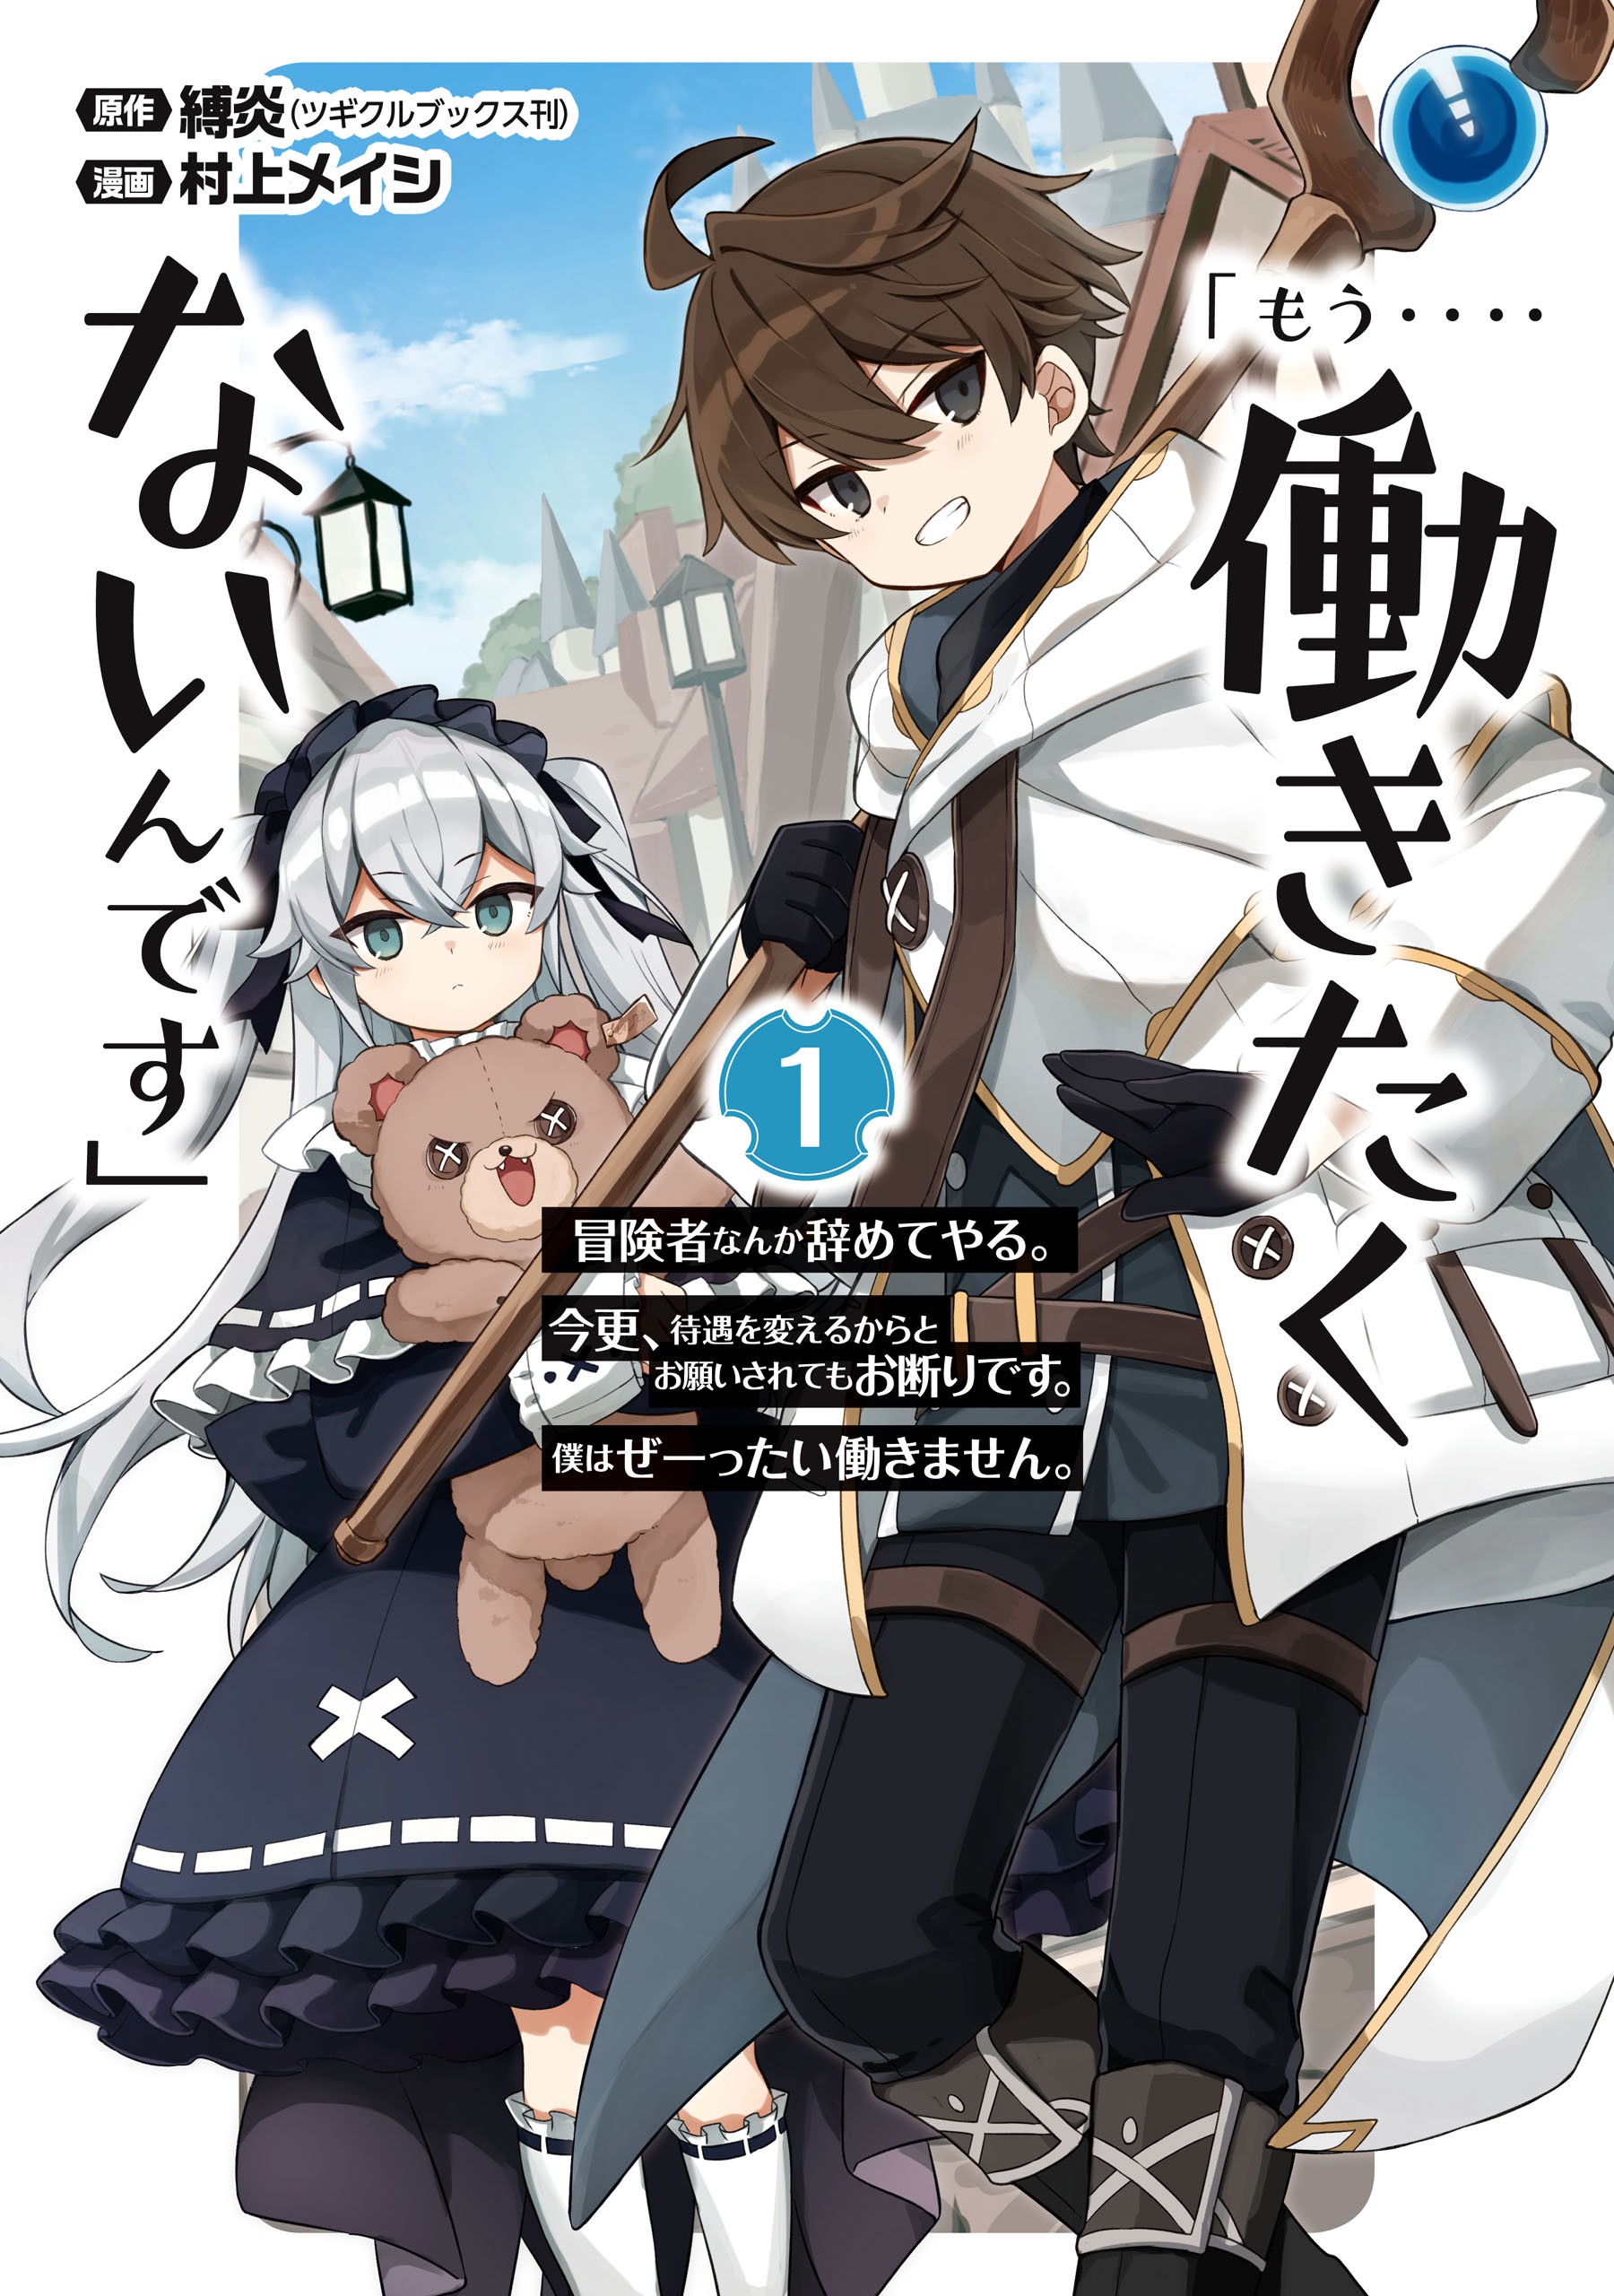 Manga Mogura RE (Manga & Anime News) on X: Romcom Kagekya de Otaku de  binbou dakedo bijin Ojousama ni osaretemasu vol 1 by Mitsuki Rin, Minamoto  Motomi A poor, introverted otaku is